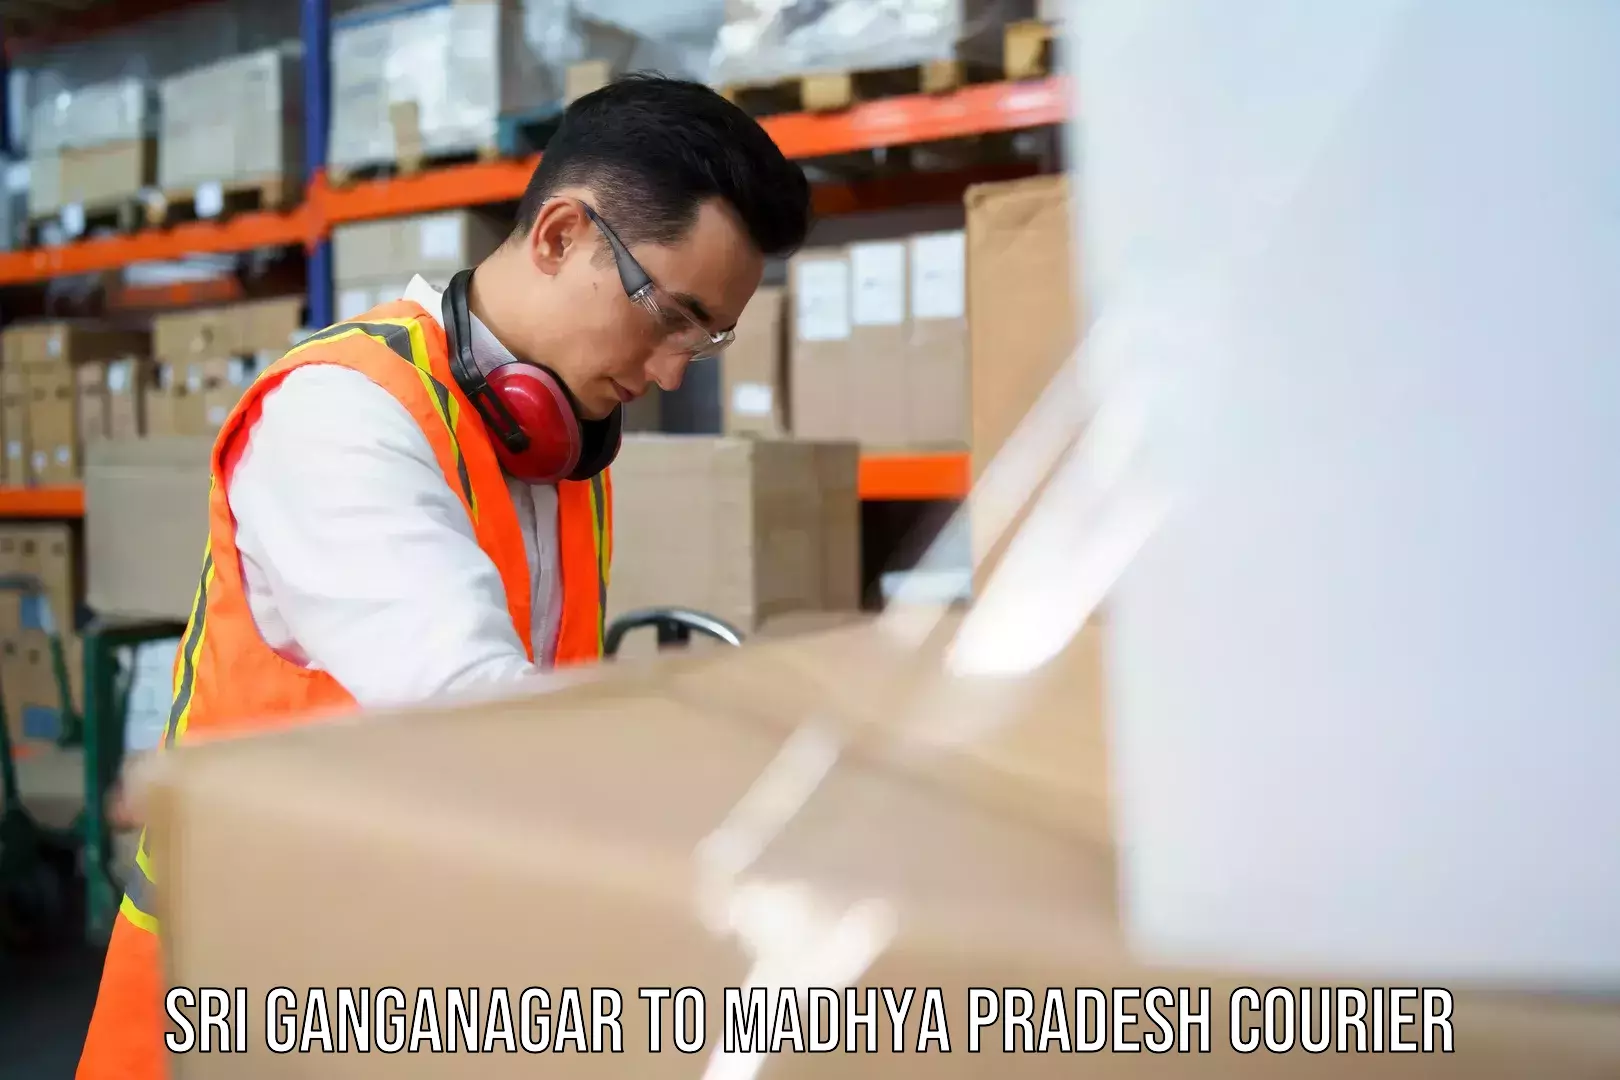 Quality courier services Sri Ganganagar to Parasia